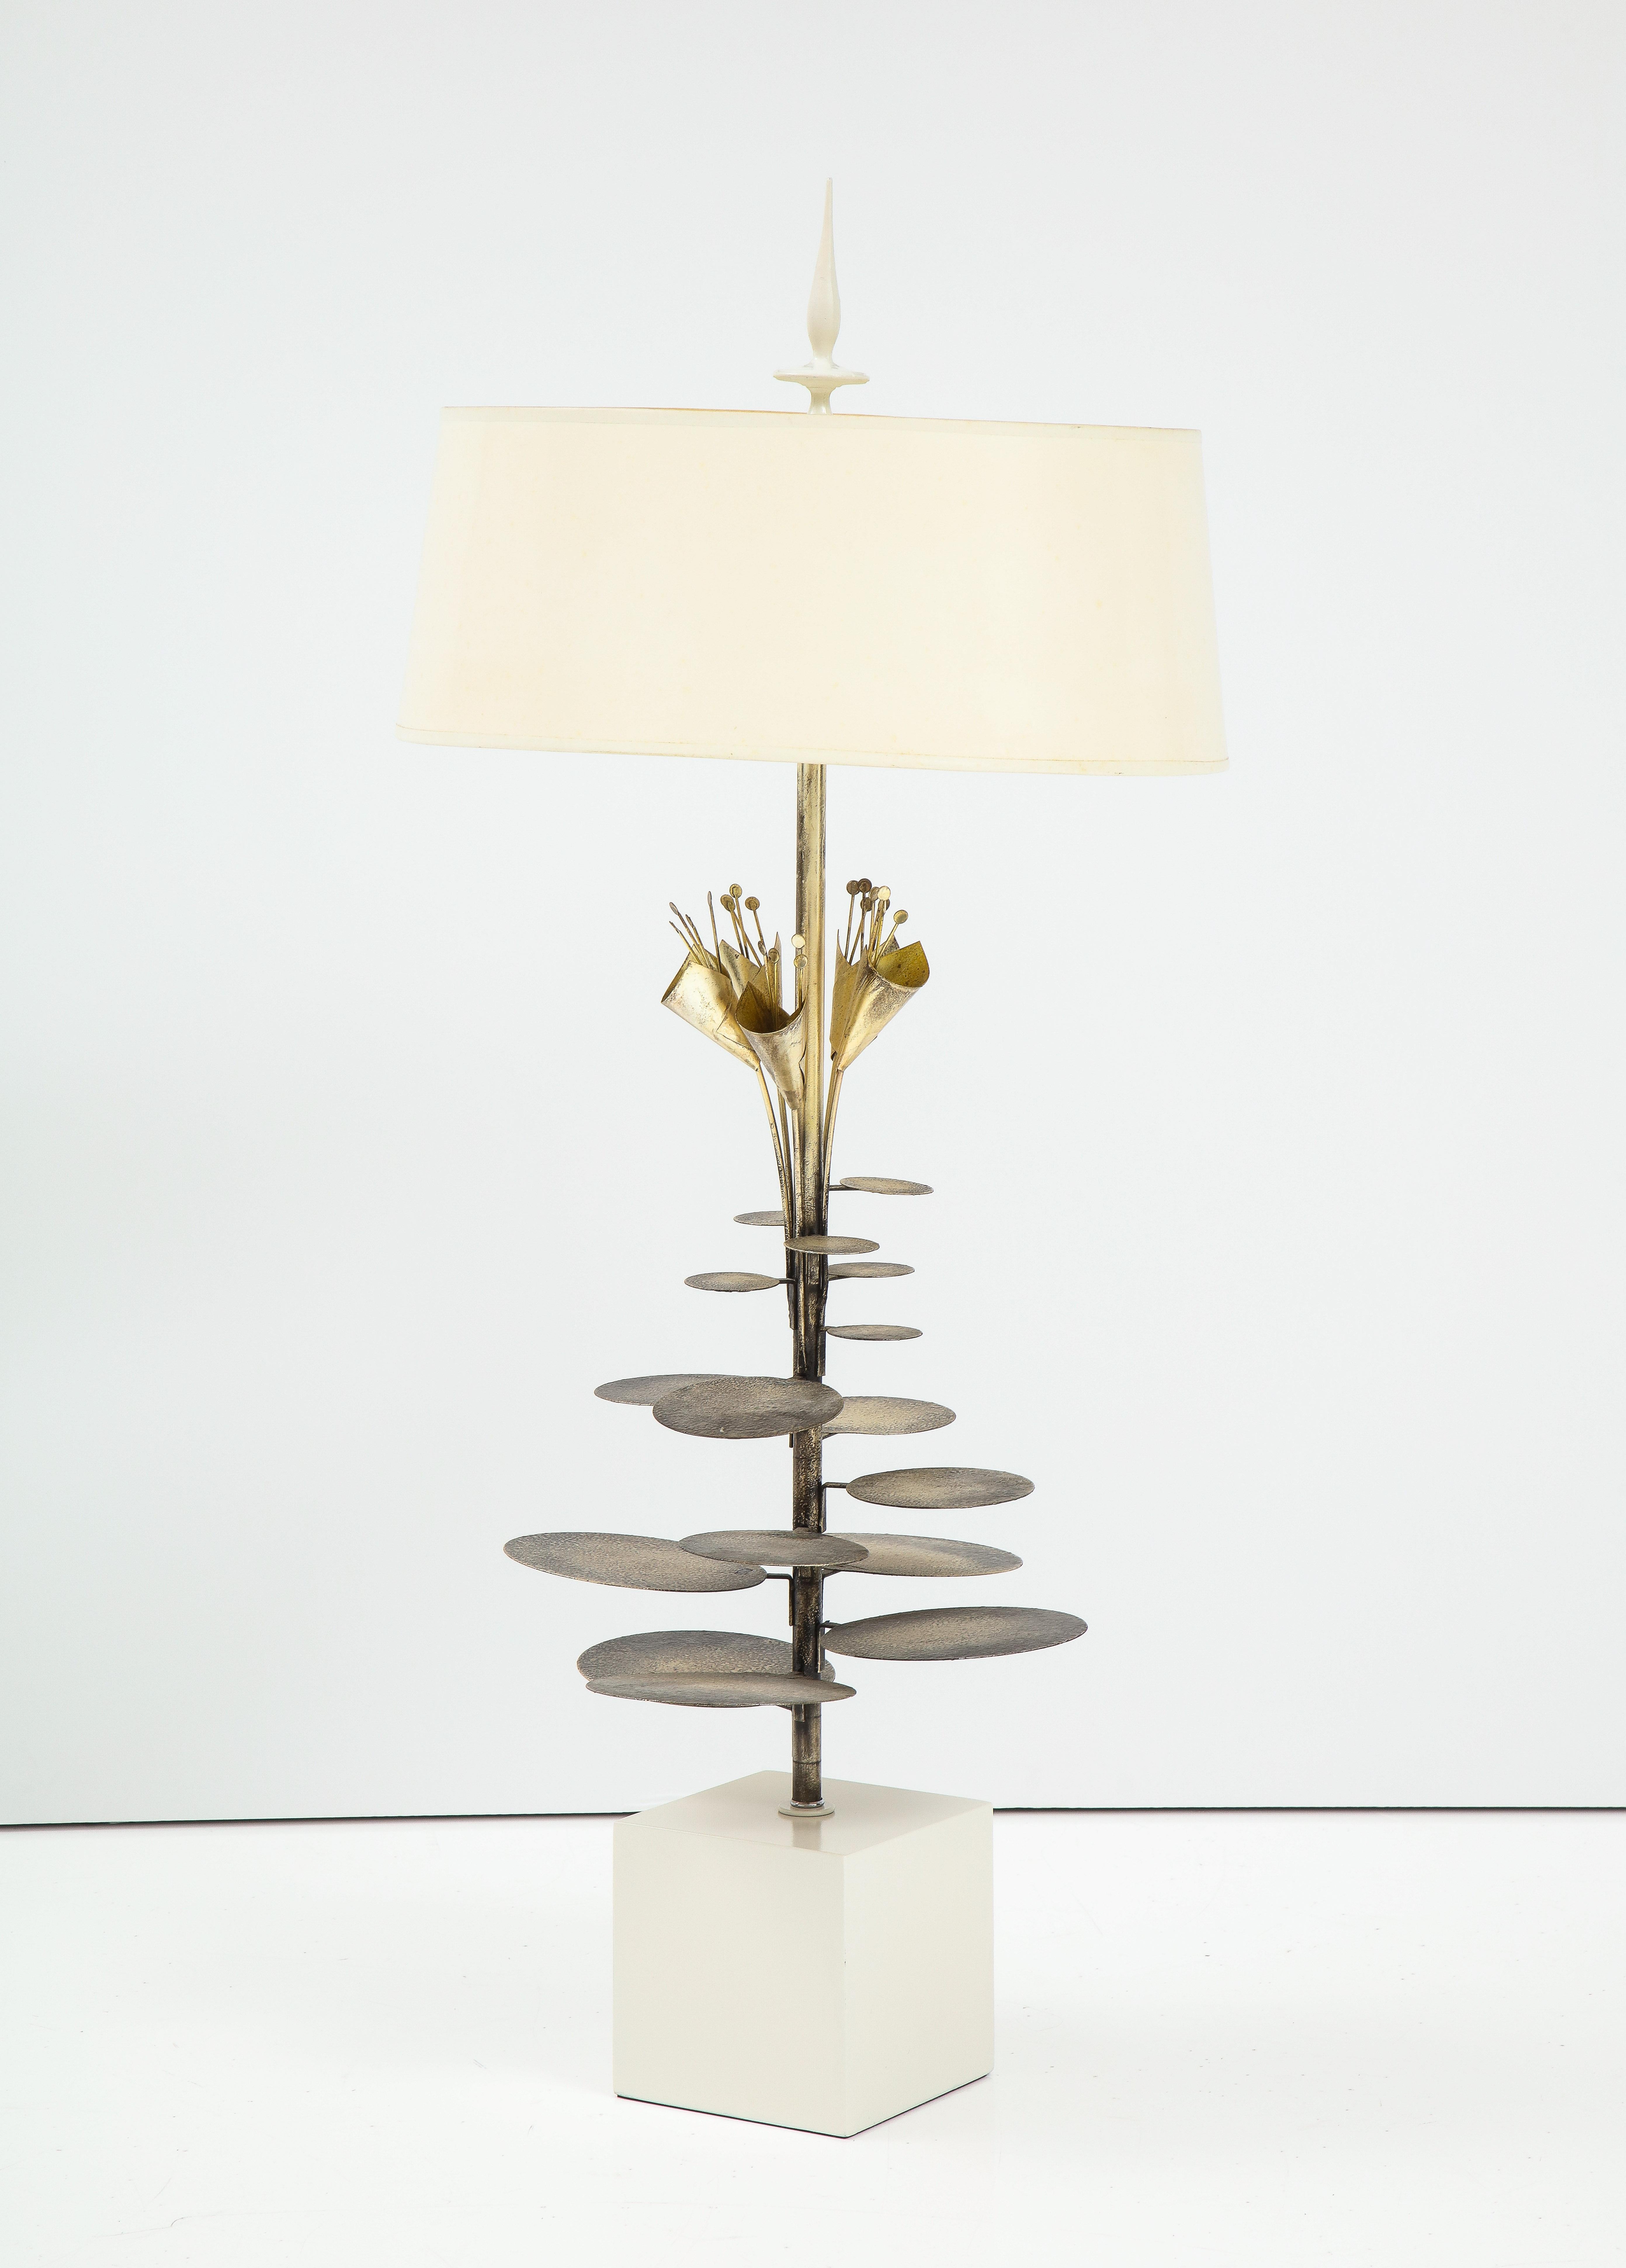 Lampe de table française des années 1970 avec une grappe de Lily pads de couleur bronze.
La lampe a été recâblée avec deux douilles d'ampoules standard.
La teinte originale présente quelques taches de décoloration.

